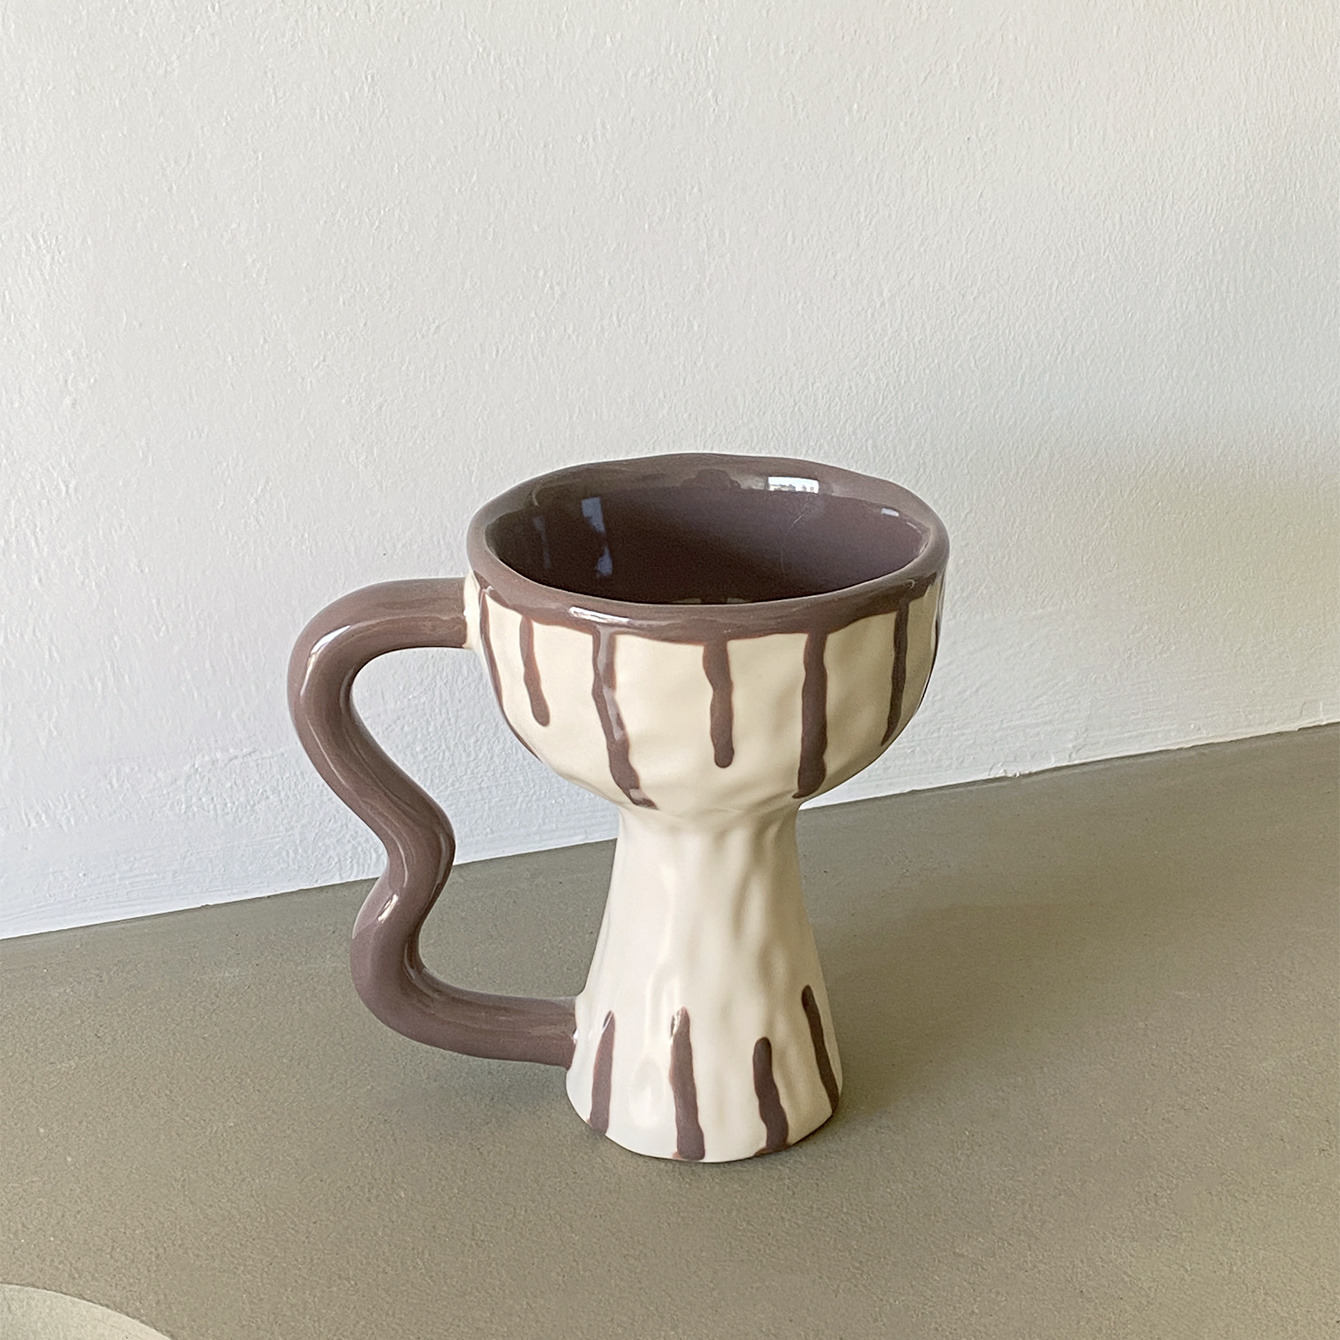 To Go Mug / Handmade to Travel Mug / Ceramic Travel Mug With Lid / Ceramic  Travel Mug / Ceramic Coffee Mug / Coffee Mug / to Go Mug / Gift 